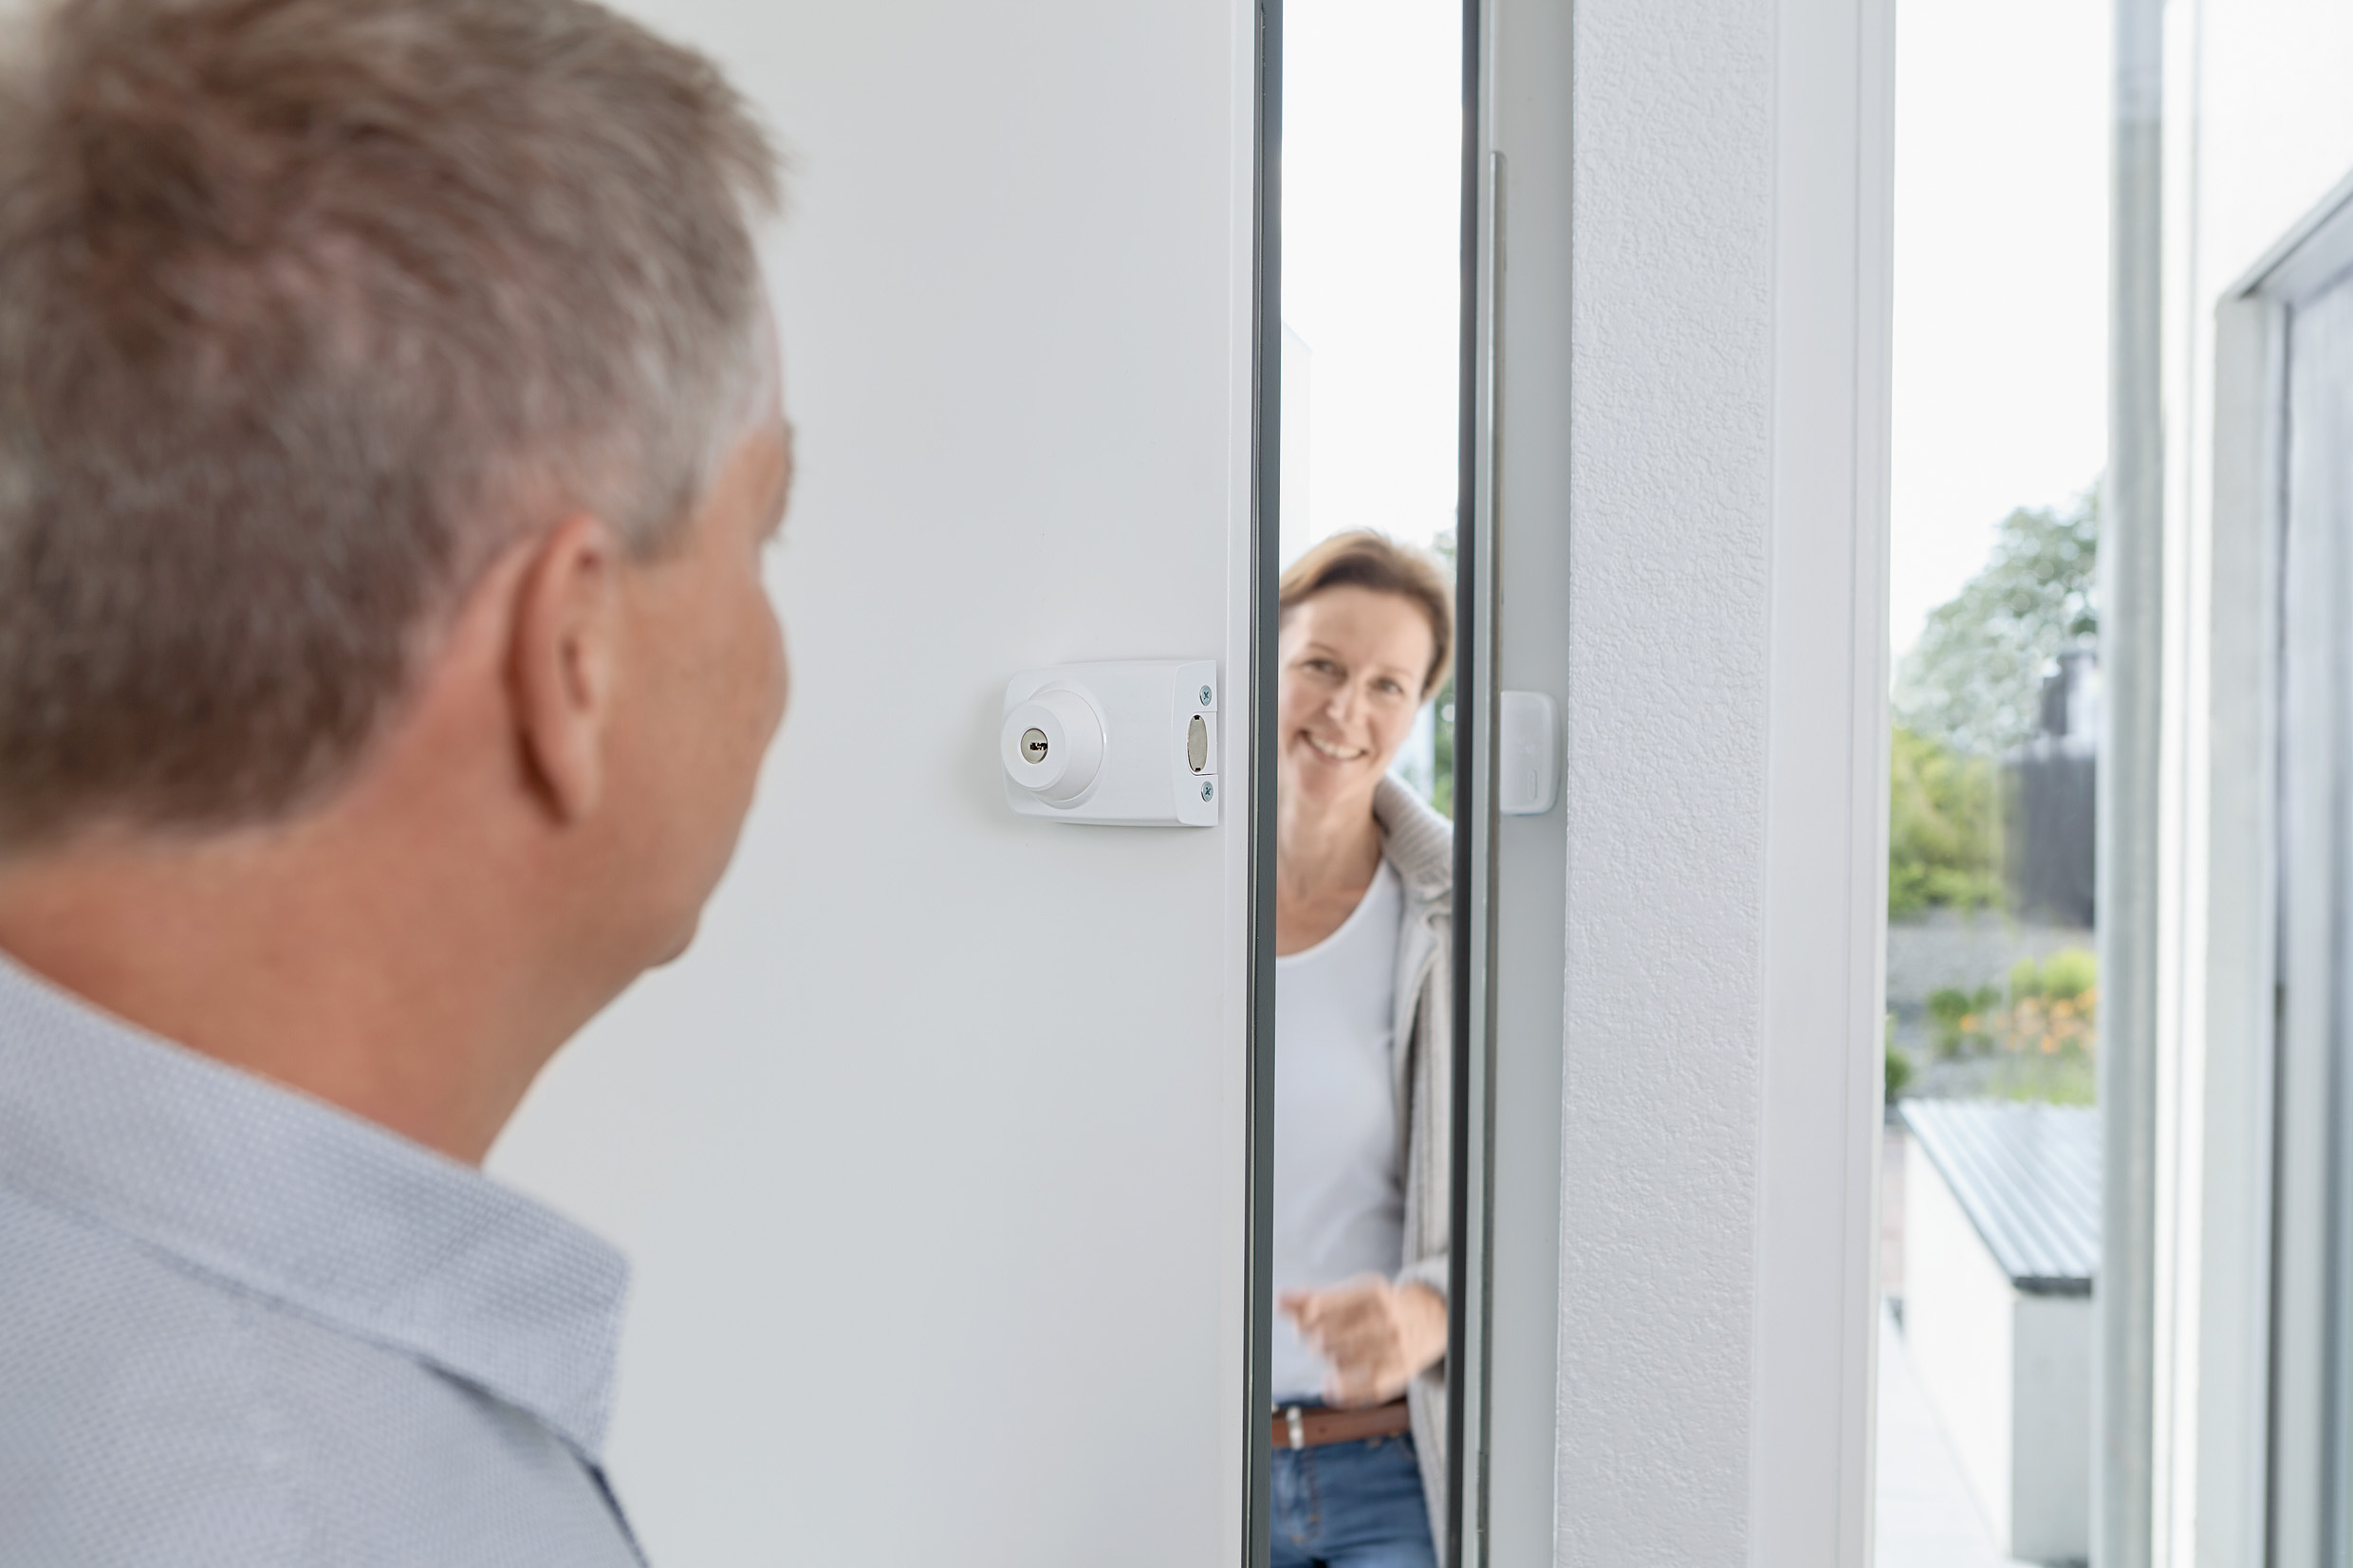 Türsicherung - Wie sichere ich meine Türen am Besten?, Blog